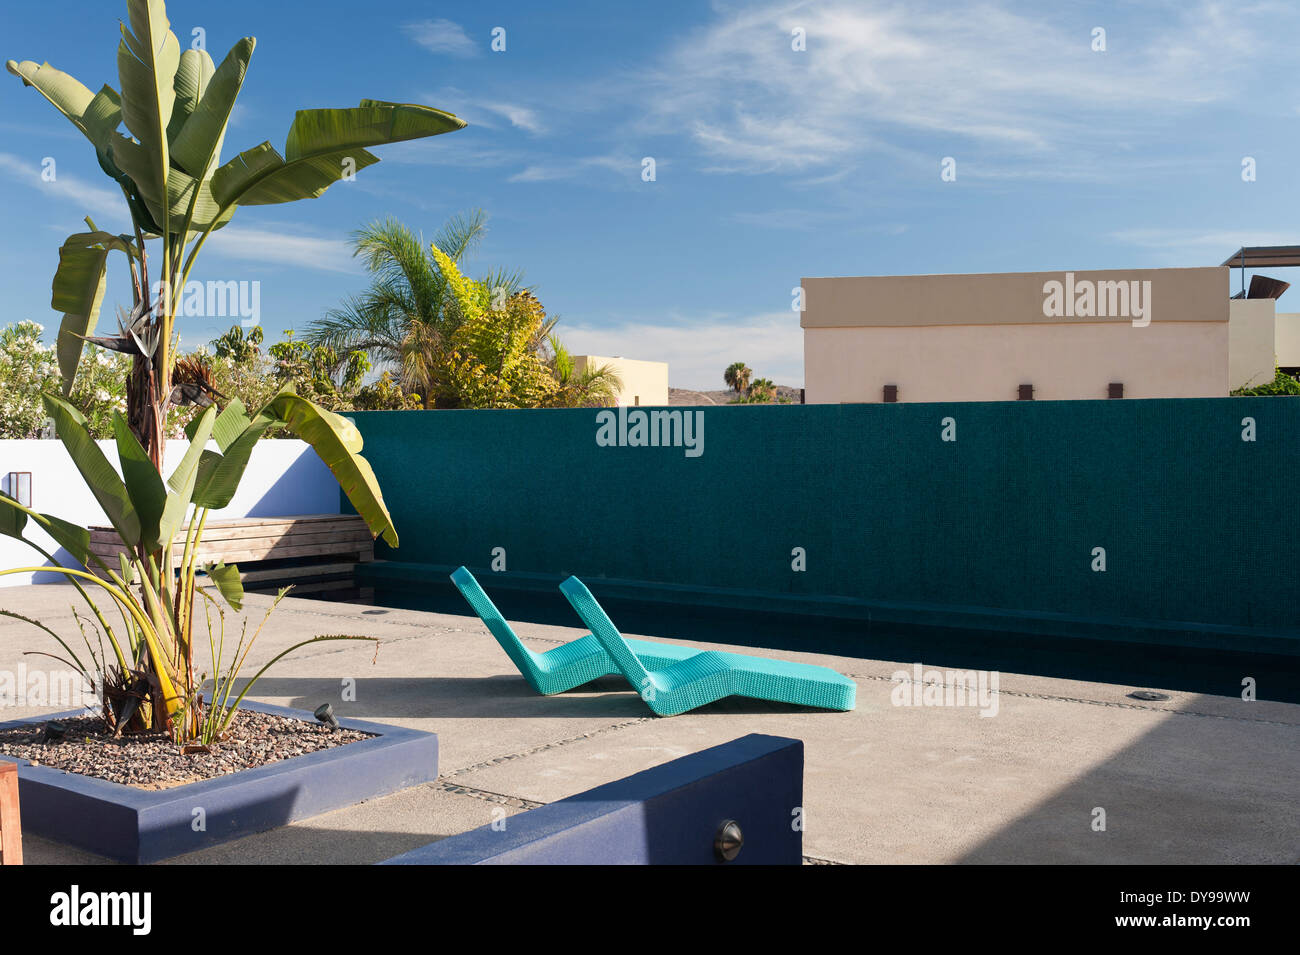 Chaises longues contemporain dans une cour de l'hôtel avec piscine Banque D'Images